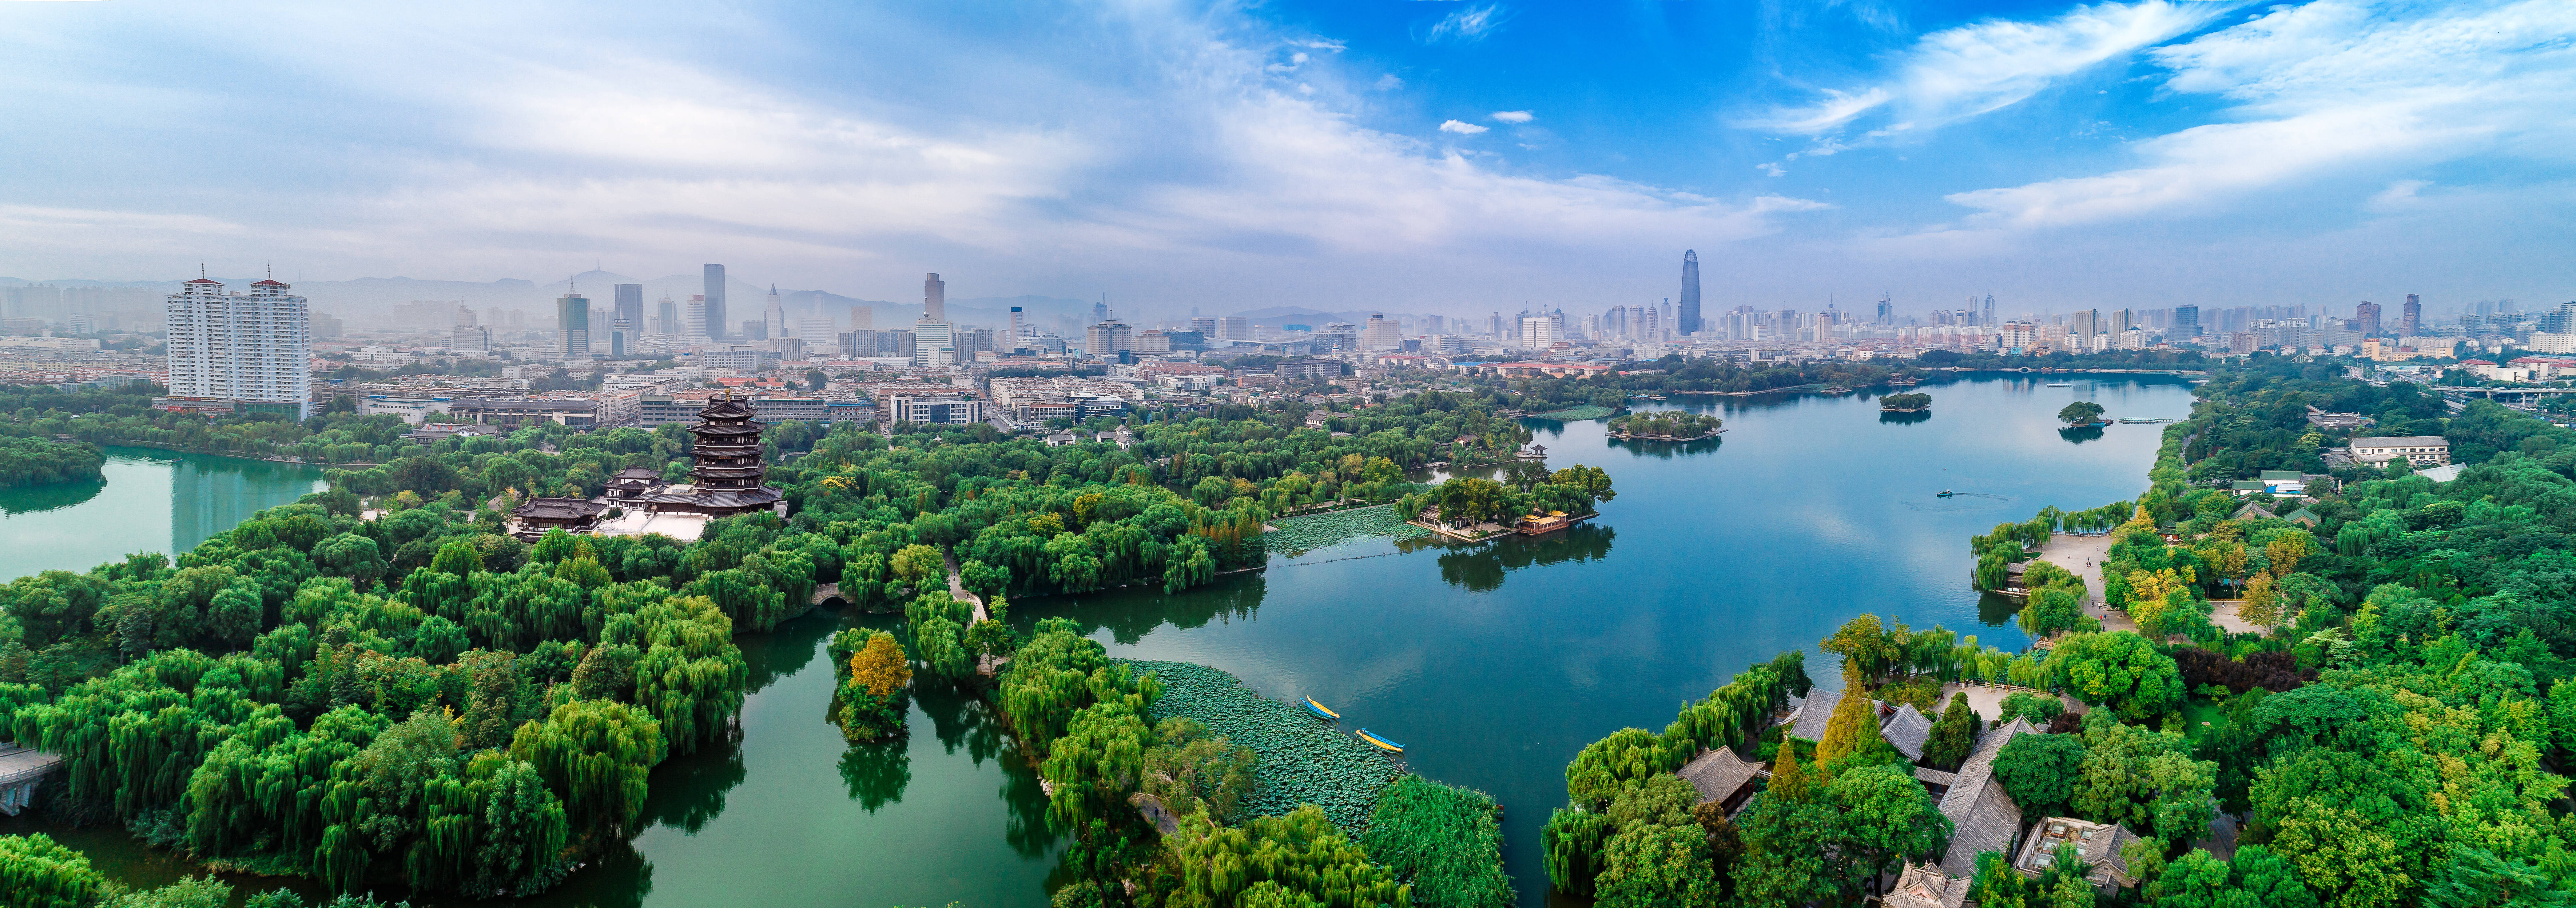 济南城市美景图片大全图片